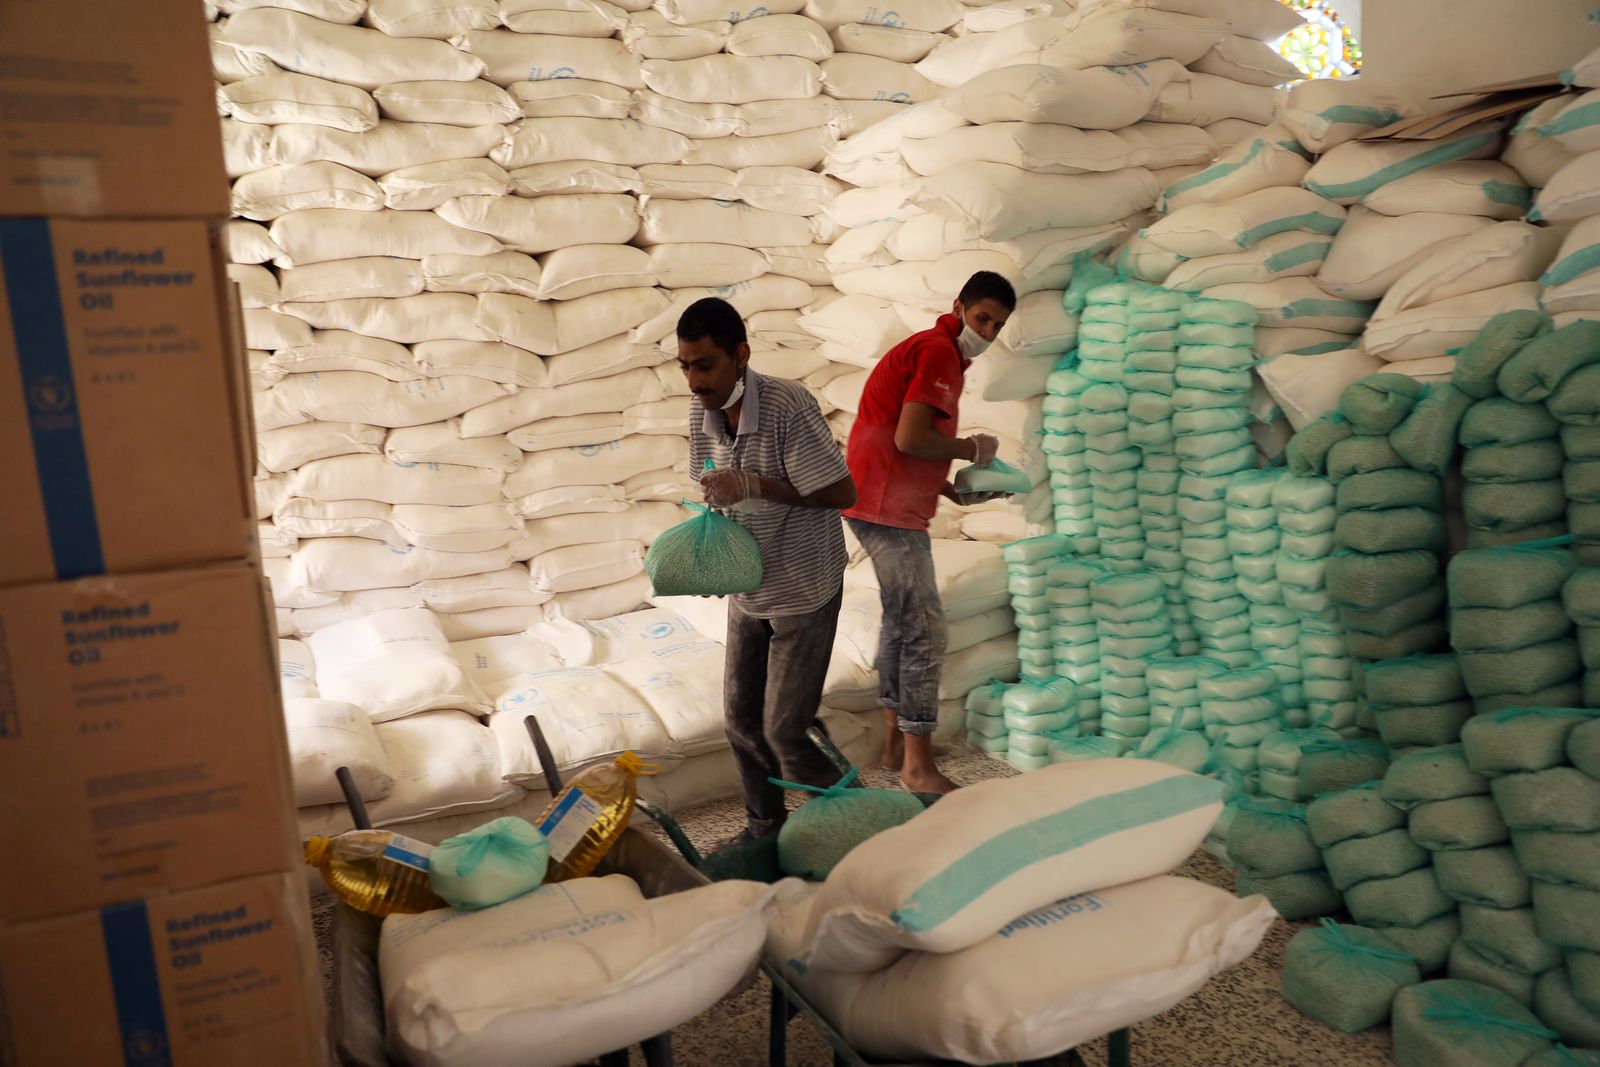 عمال يعدون مواد غذائية للمستفيدين في مركز توزيع أغذية يدعمه برنامج الغذاء العالمي في صنعاء. - REUTERS